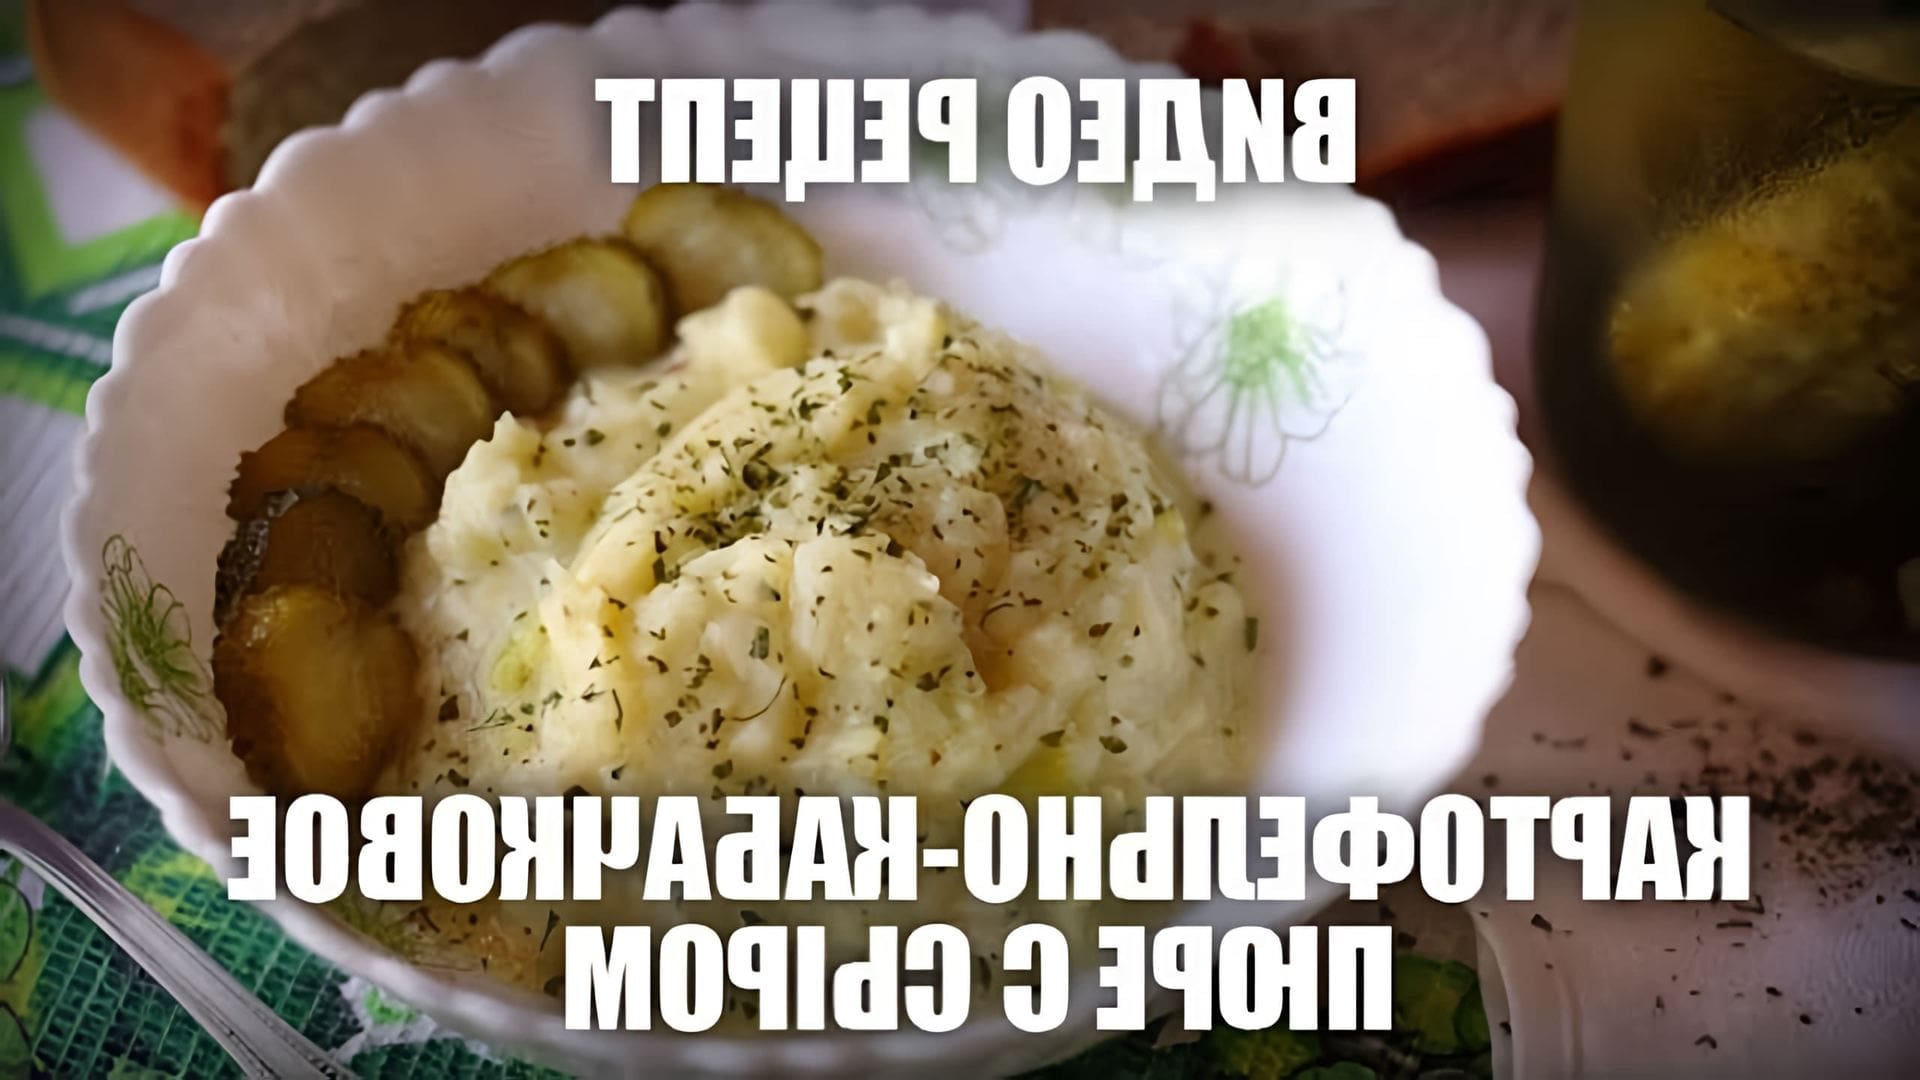 В этом видео демонстрируется рецепт картофельно-кабачкового пюре с сыром